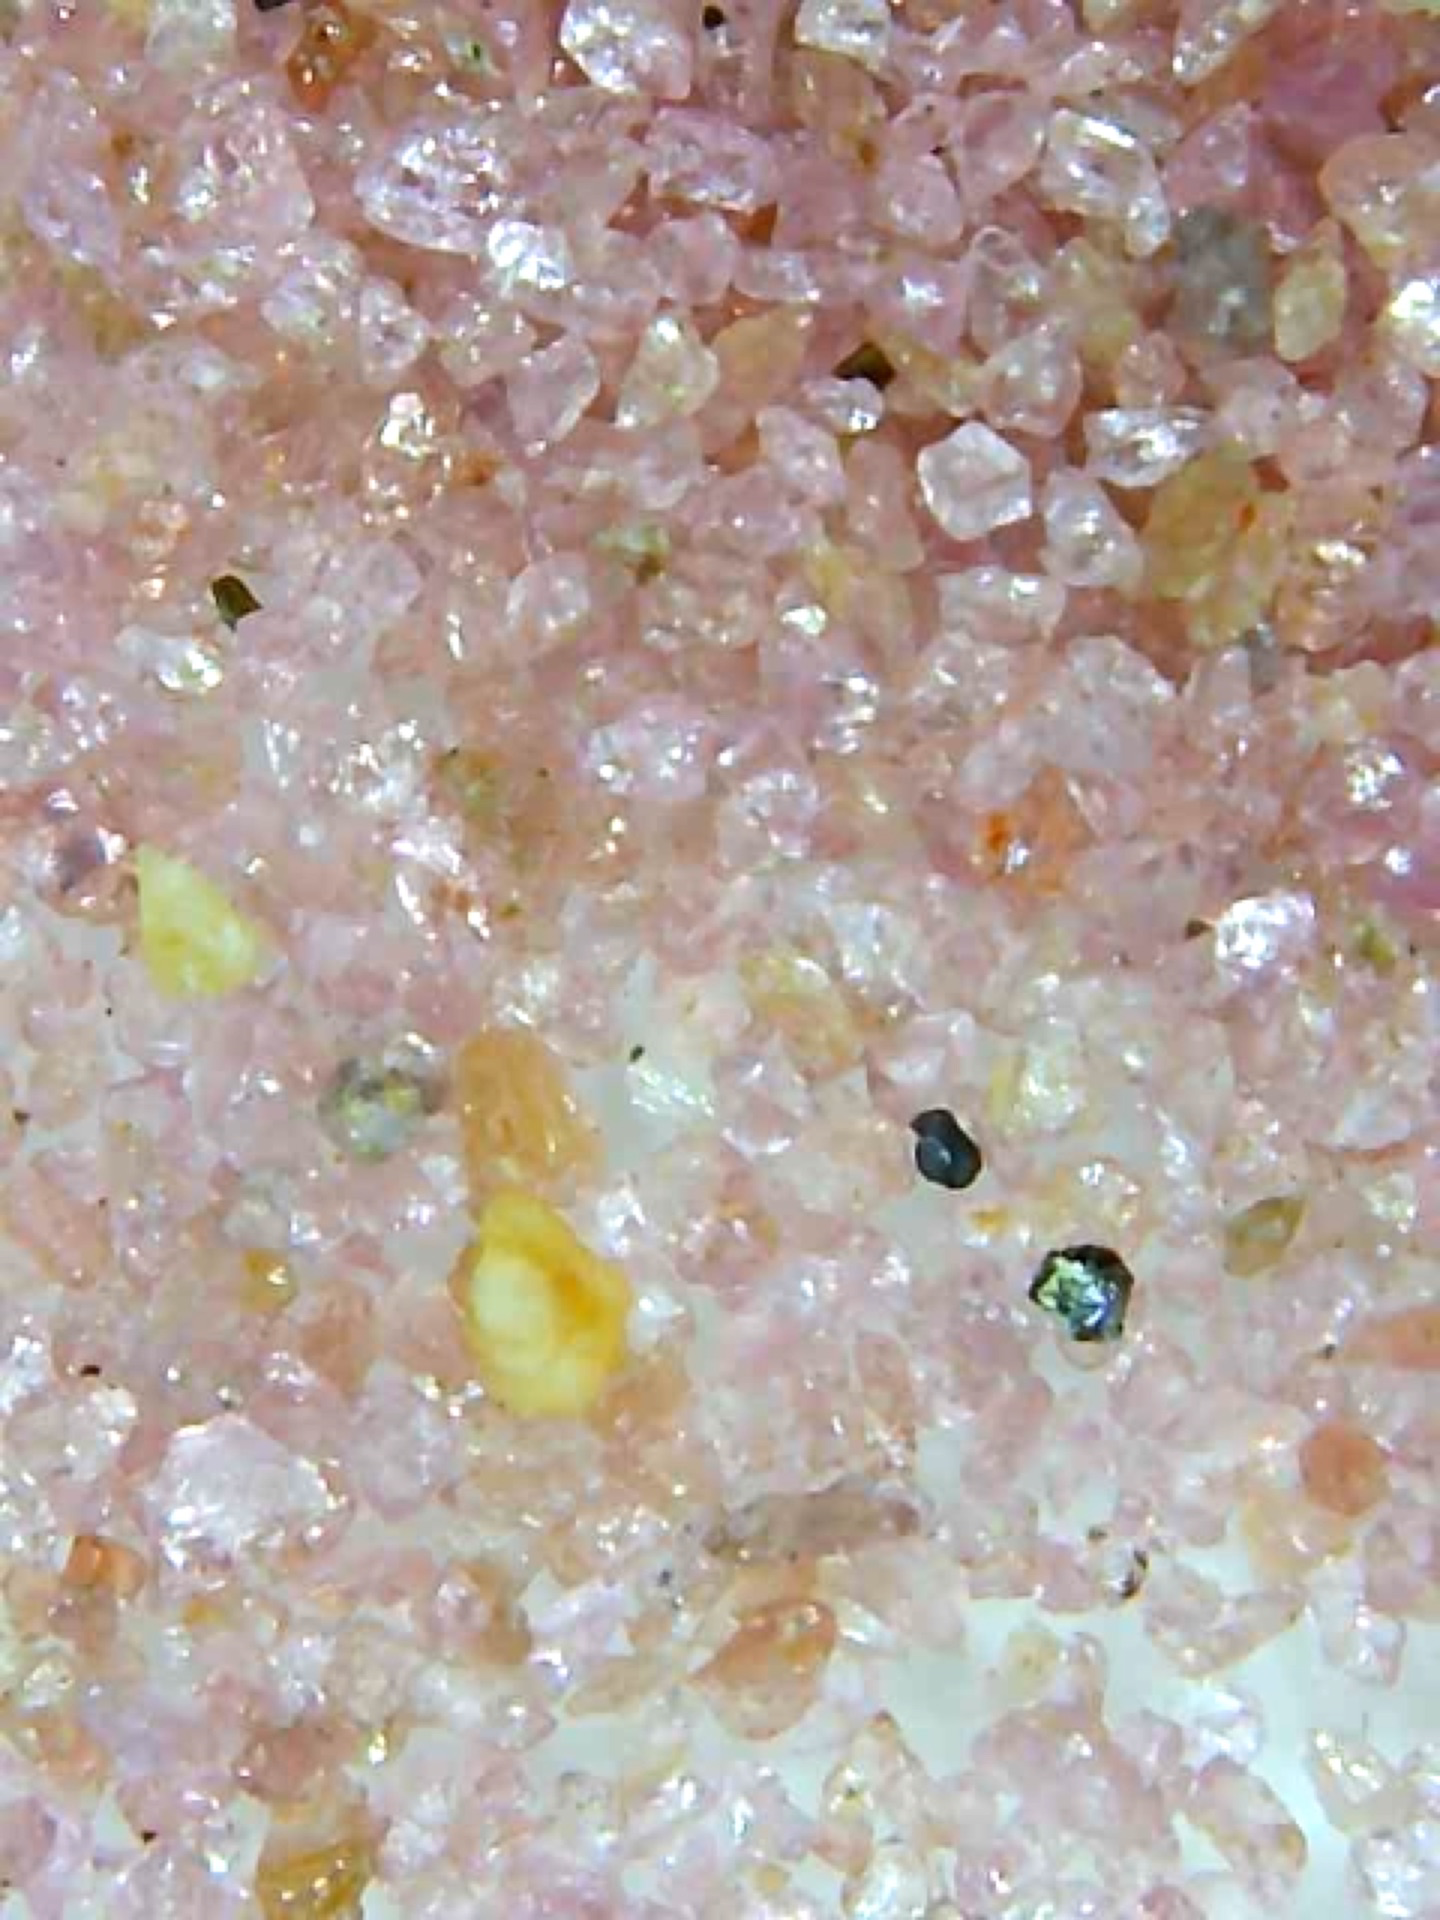 magnifyed pink sand on a glass slide